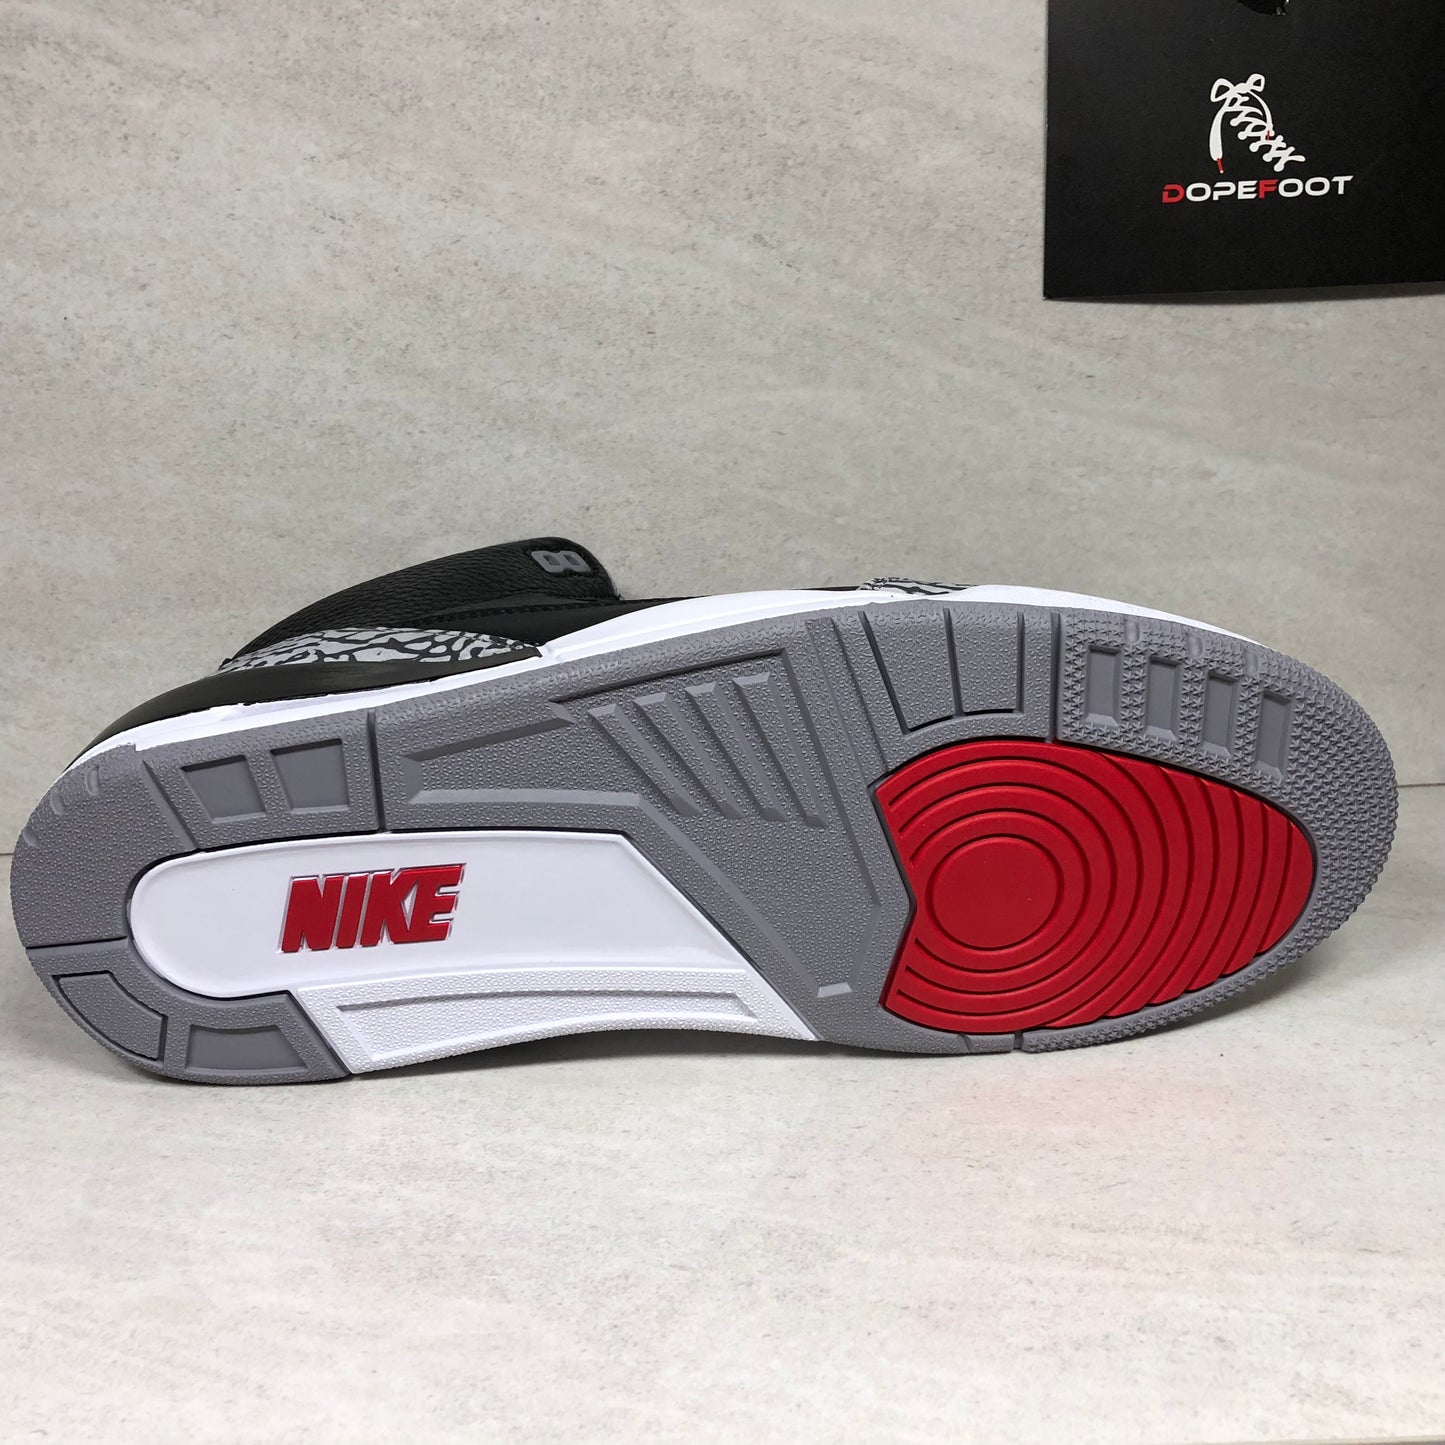 Nike Air Jordan 3 OG Retro Noir Ciment 2018 - 854262 001 - Taille 10/10.5